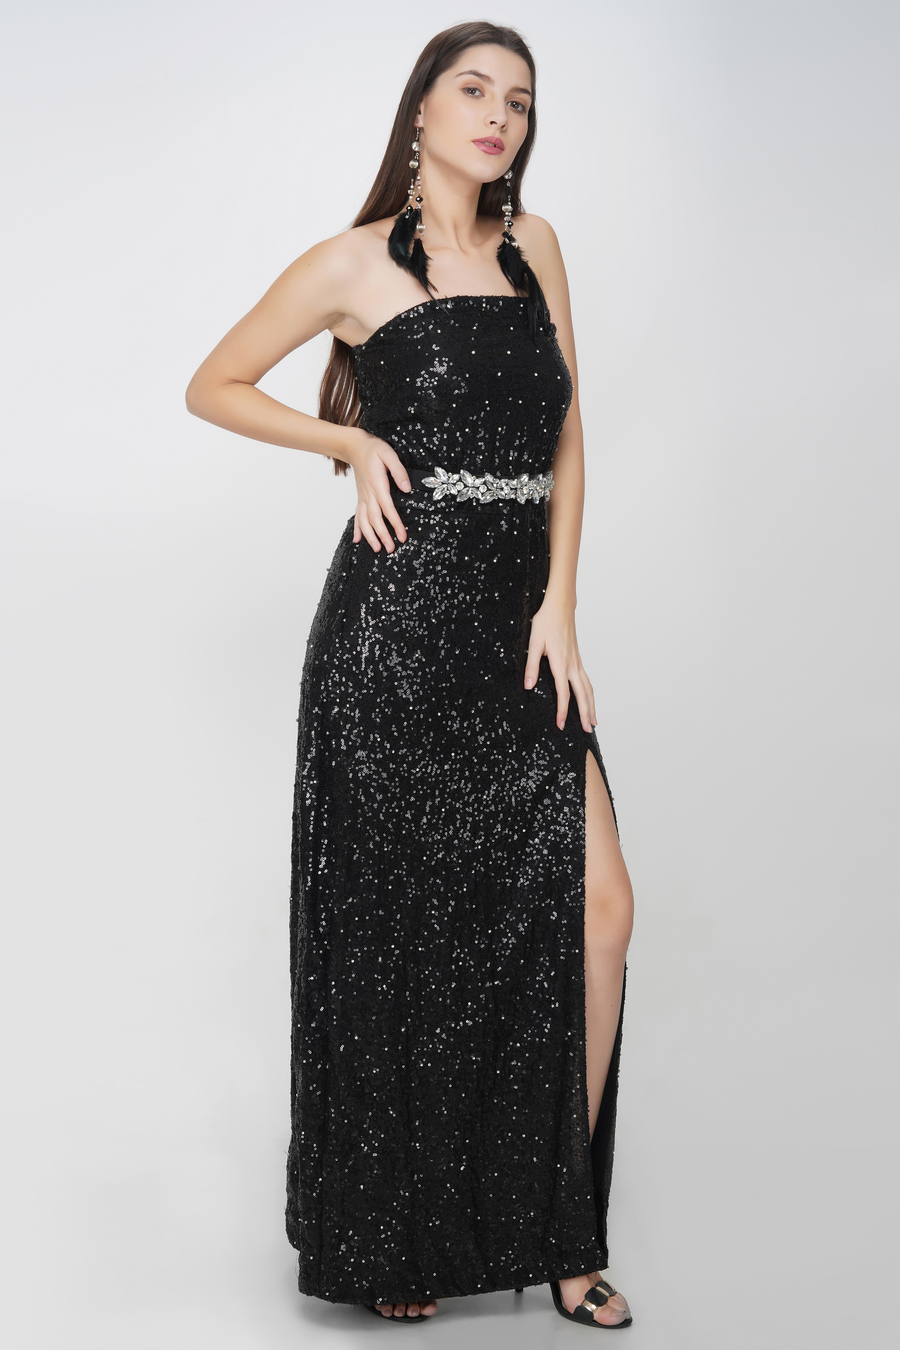 Sequin Dresses for Women | Midi & Maxi - Ever-Pretty UK